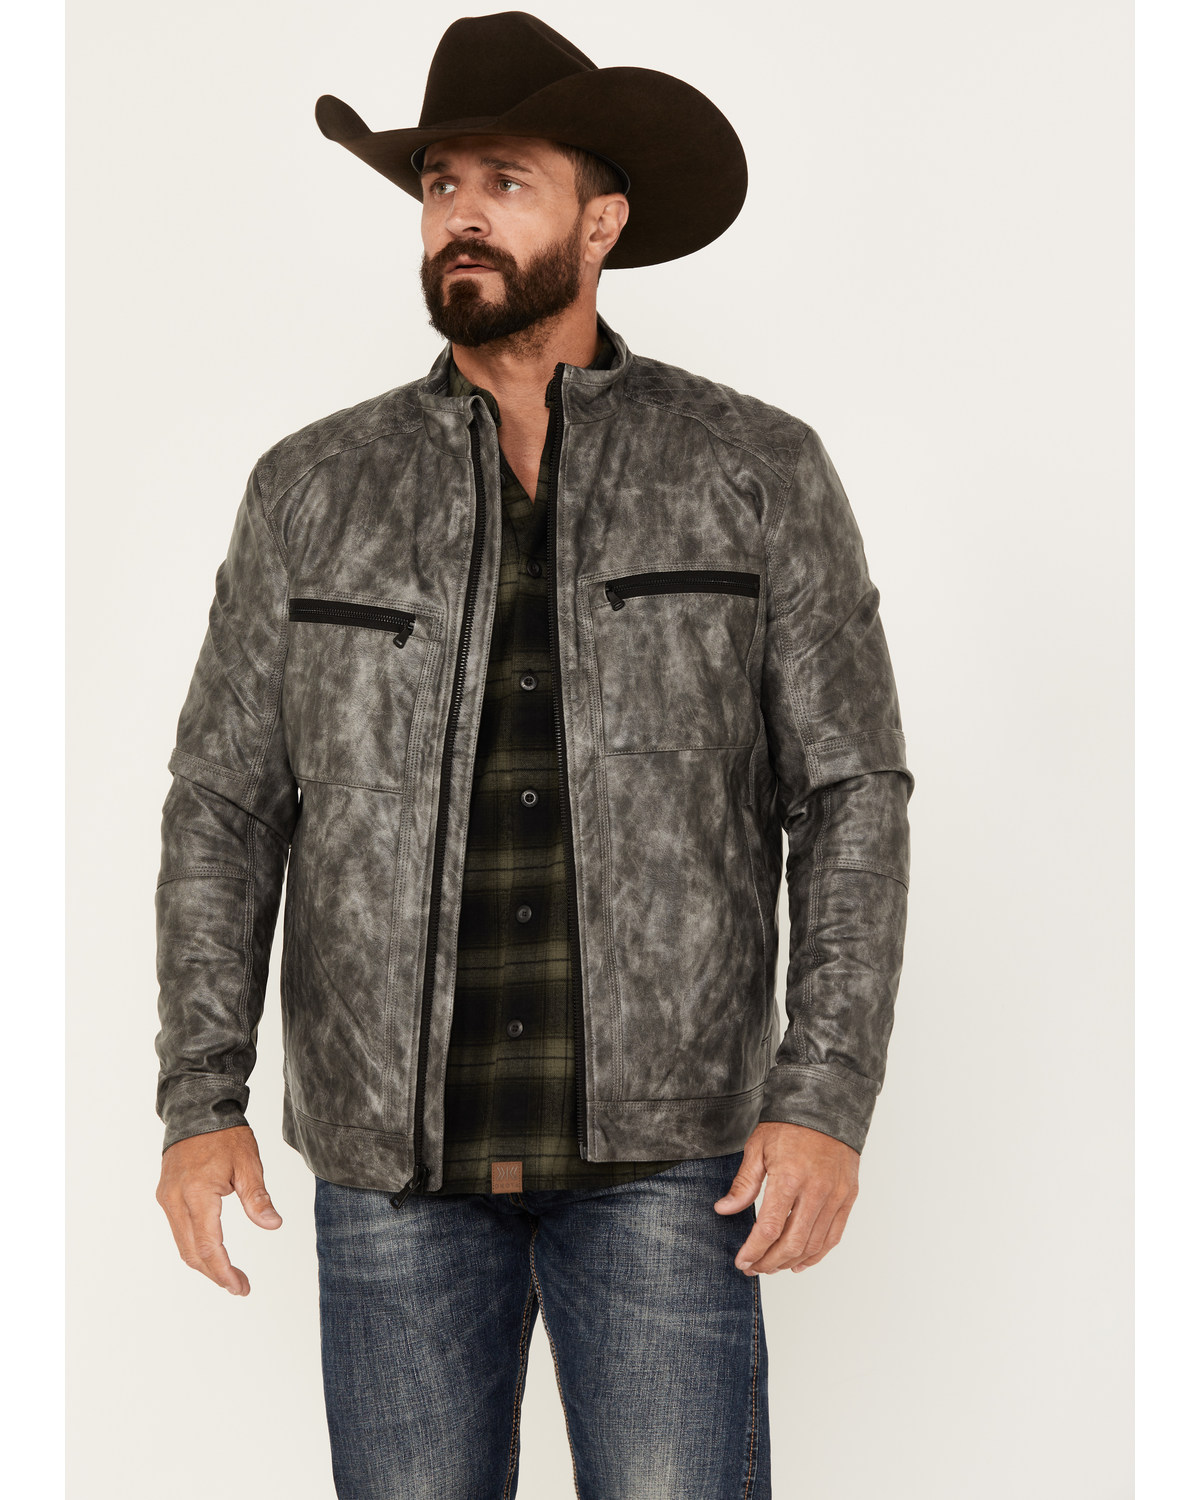 Cody James Men's Backwoods 2.0 Leather Jacket